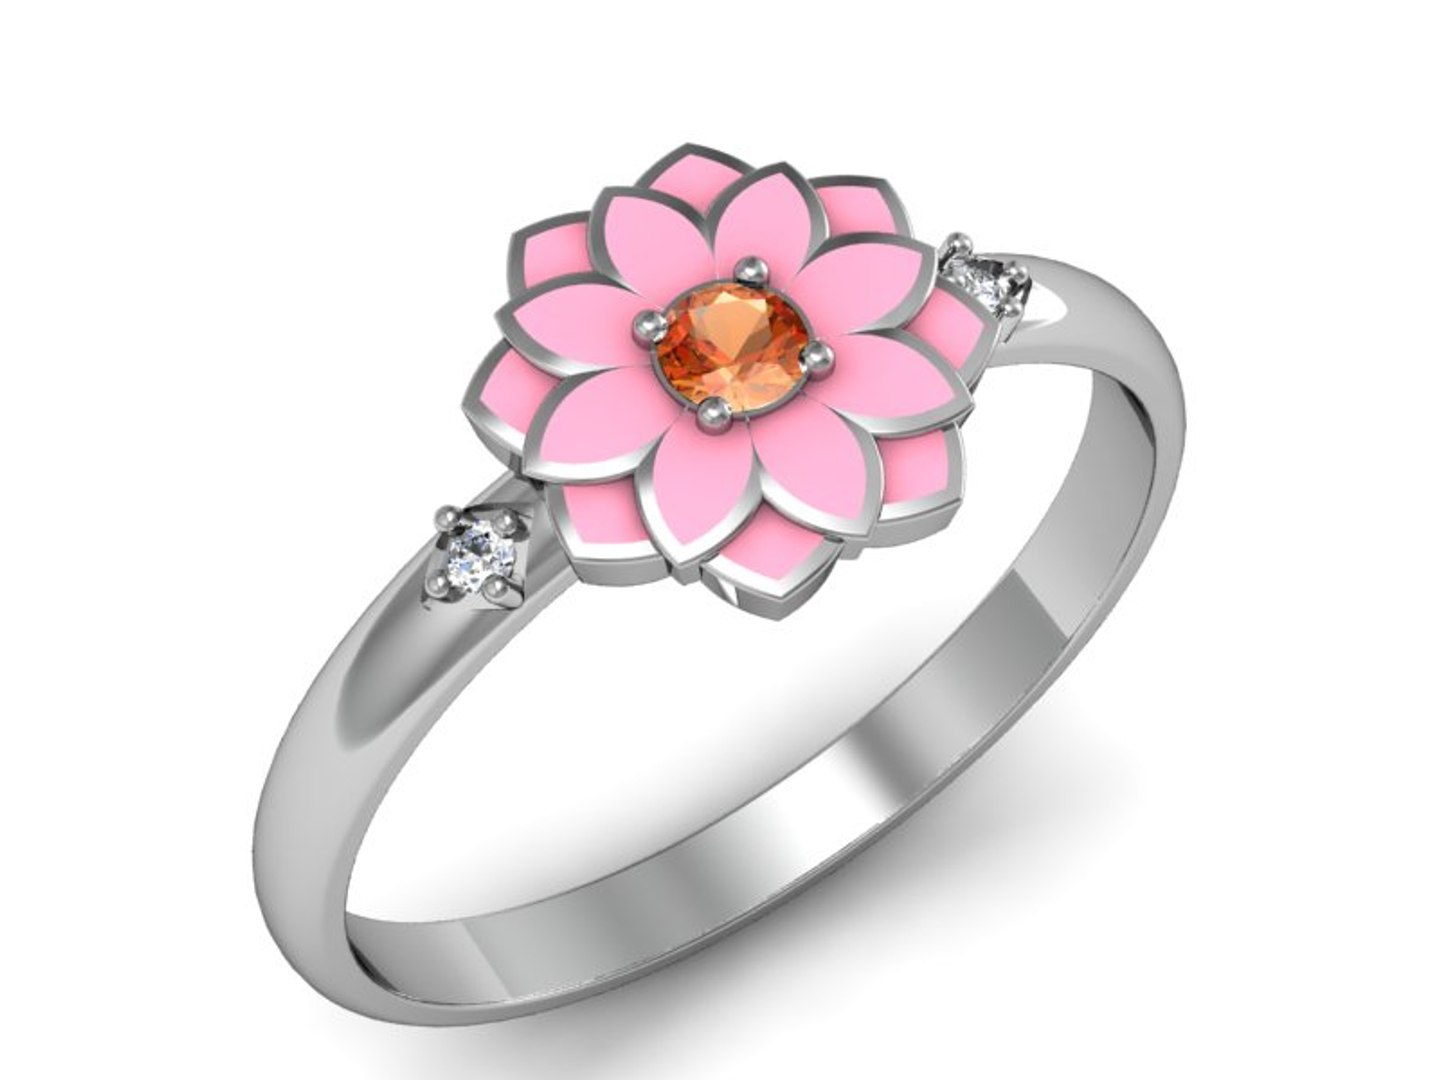 3d ring flower pandora model https://p.turbosquid.com/ts-thumb/Ia/iWlJDs/0zUJW0Rk/r2/jpg/1484521477/1920x1080/fit_q87/c1e03769b785e93ce7474ad4b10f4315511b82e3/r2.jpg